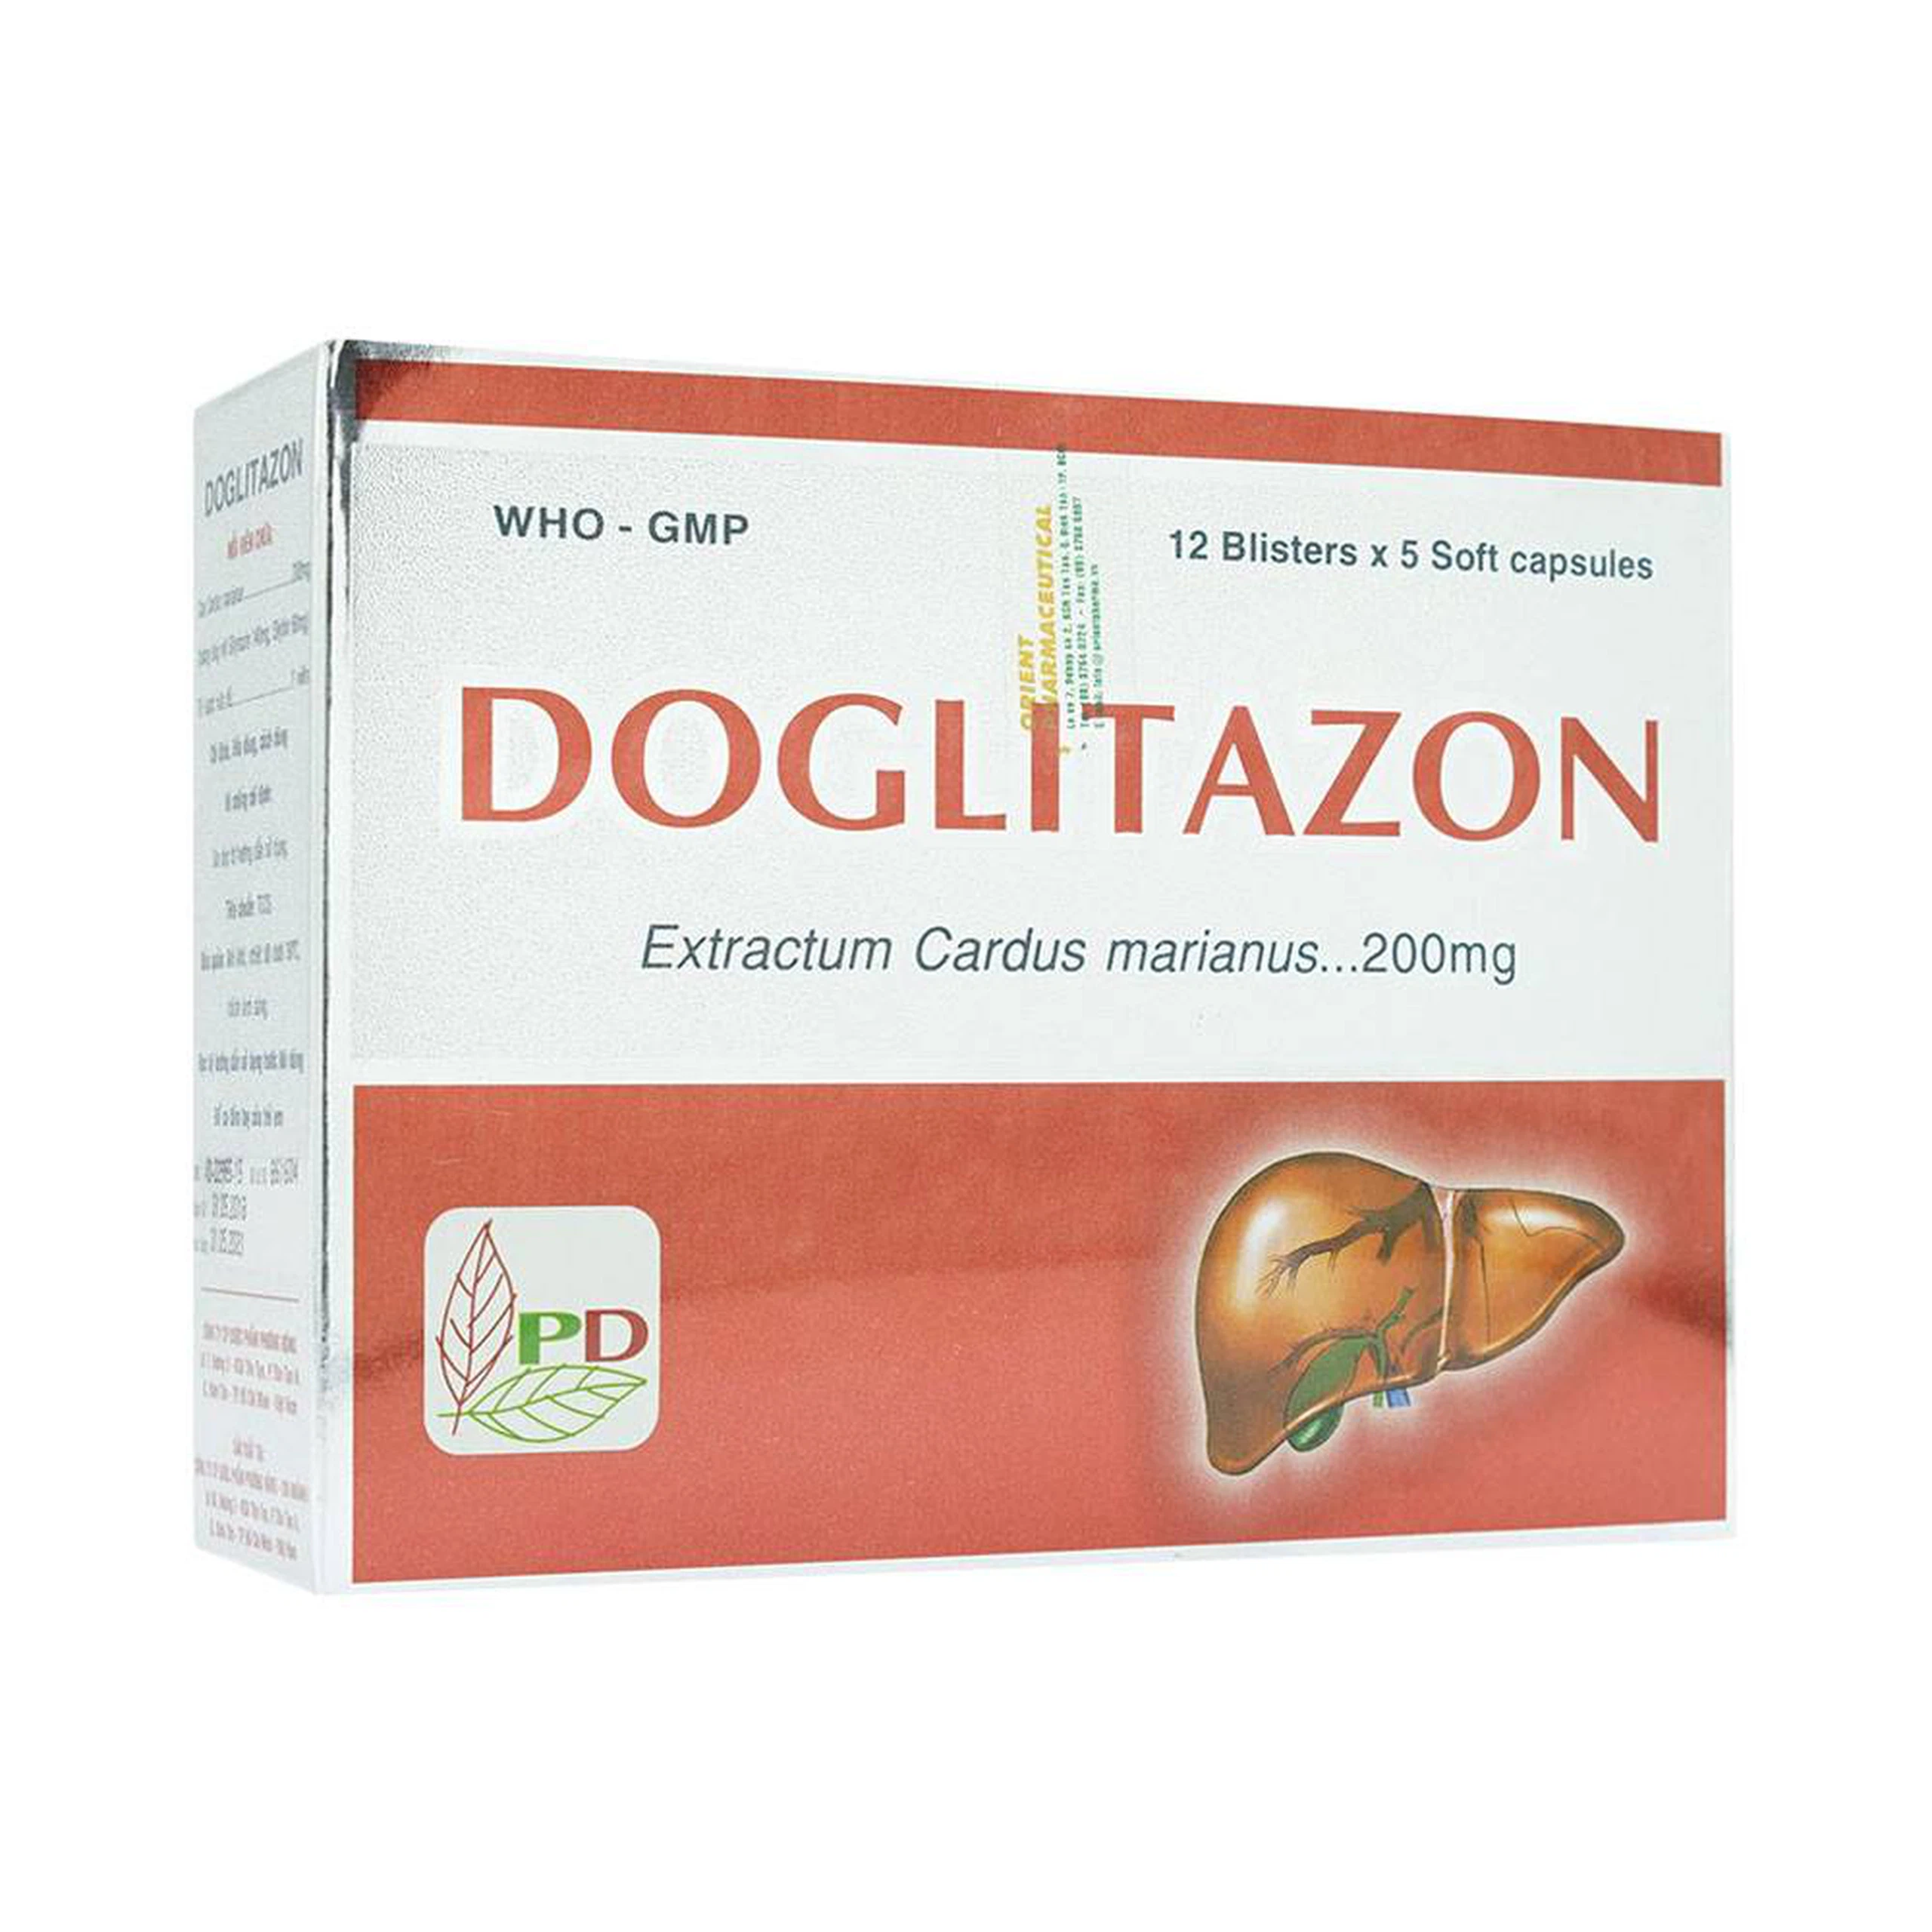 Thuốc Doglitazon 200mg Phương Đông điều trị rối loạn tiêu hóa, giải độc gan (12 vỉ x 5 viên)